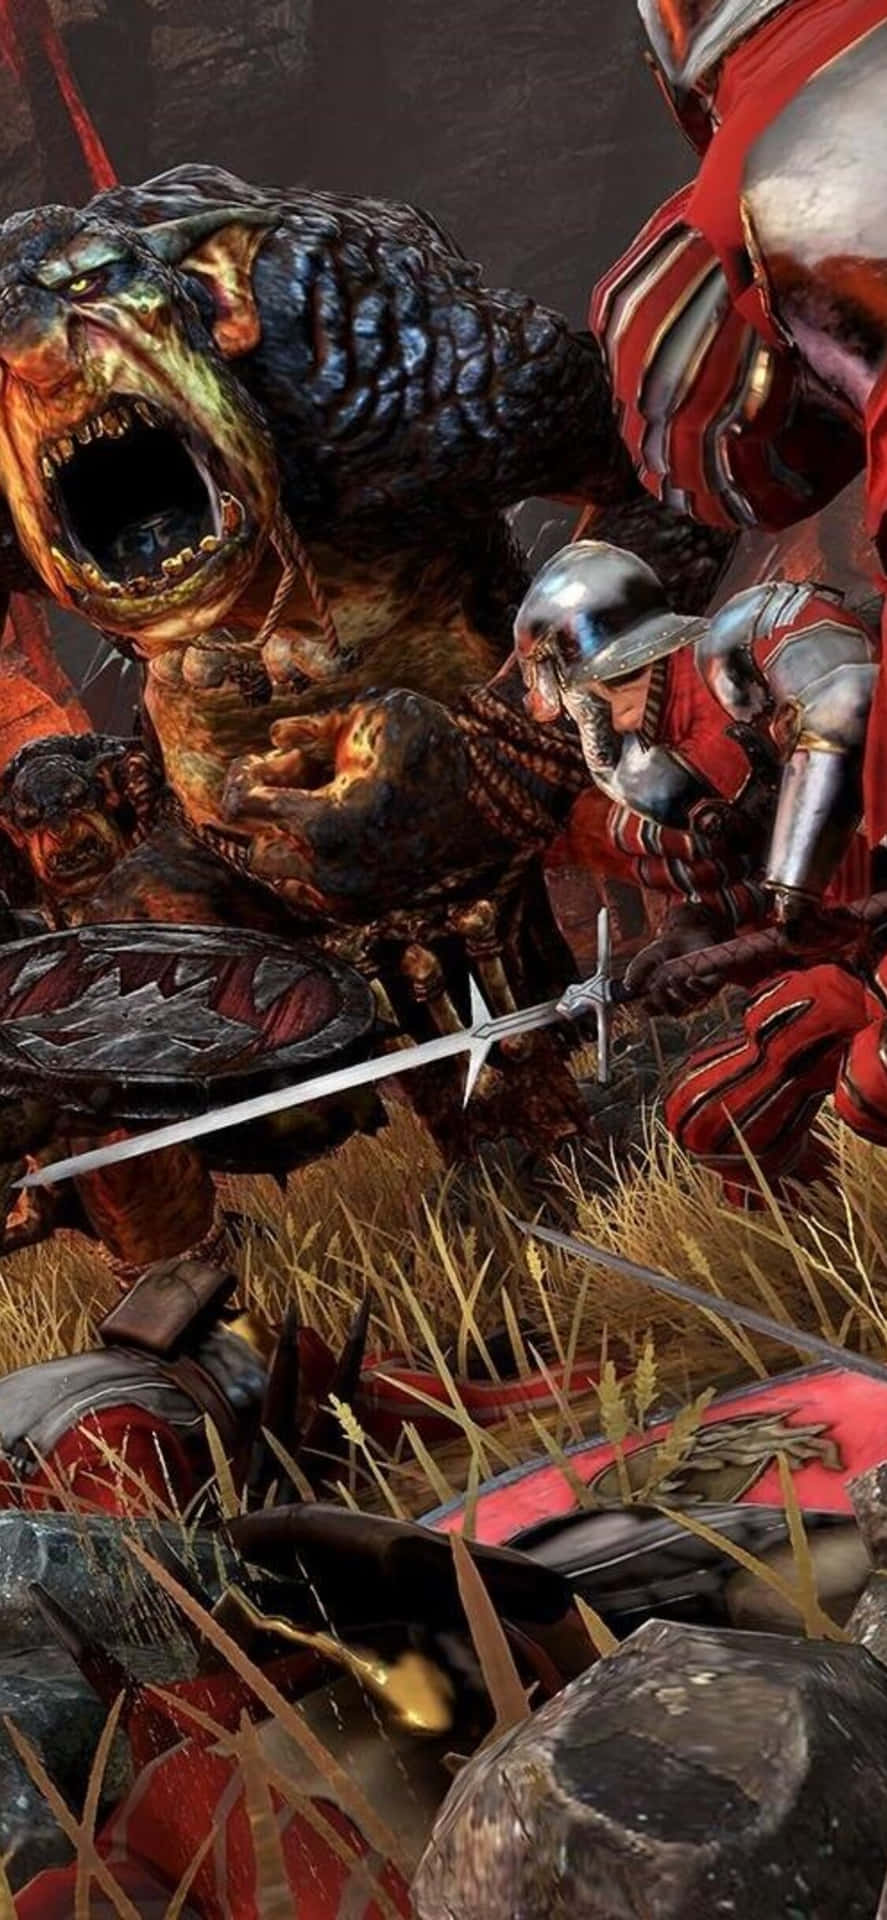 Upplevden Ultimata Fantasikrigföringen Med Iphone X Och Total War Warhammer.